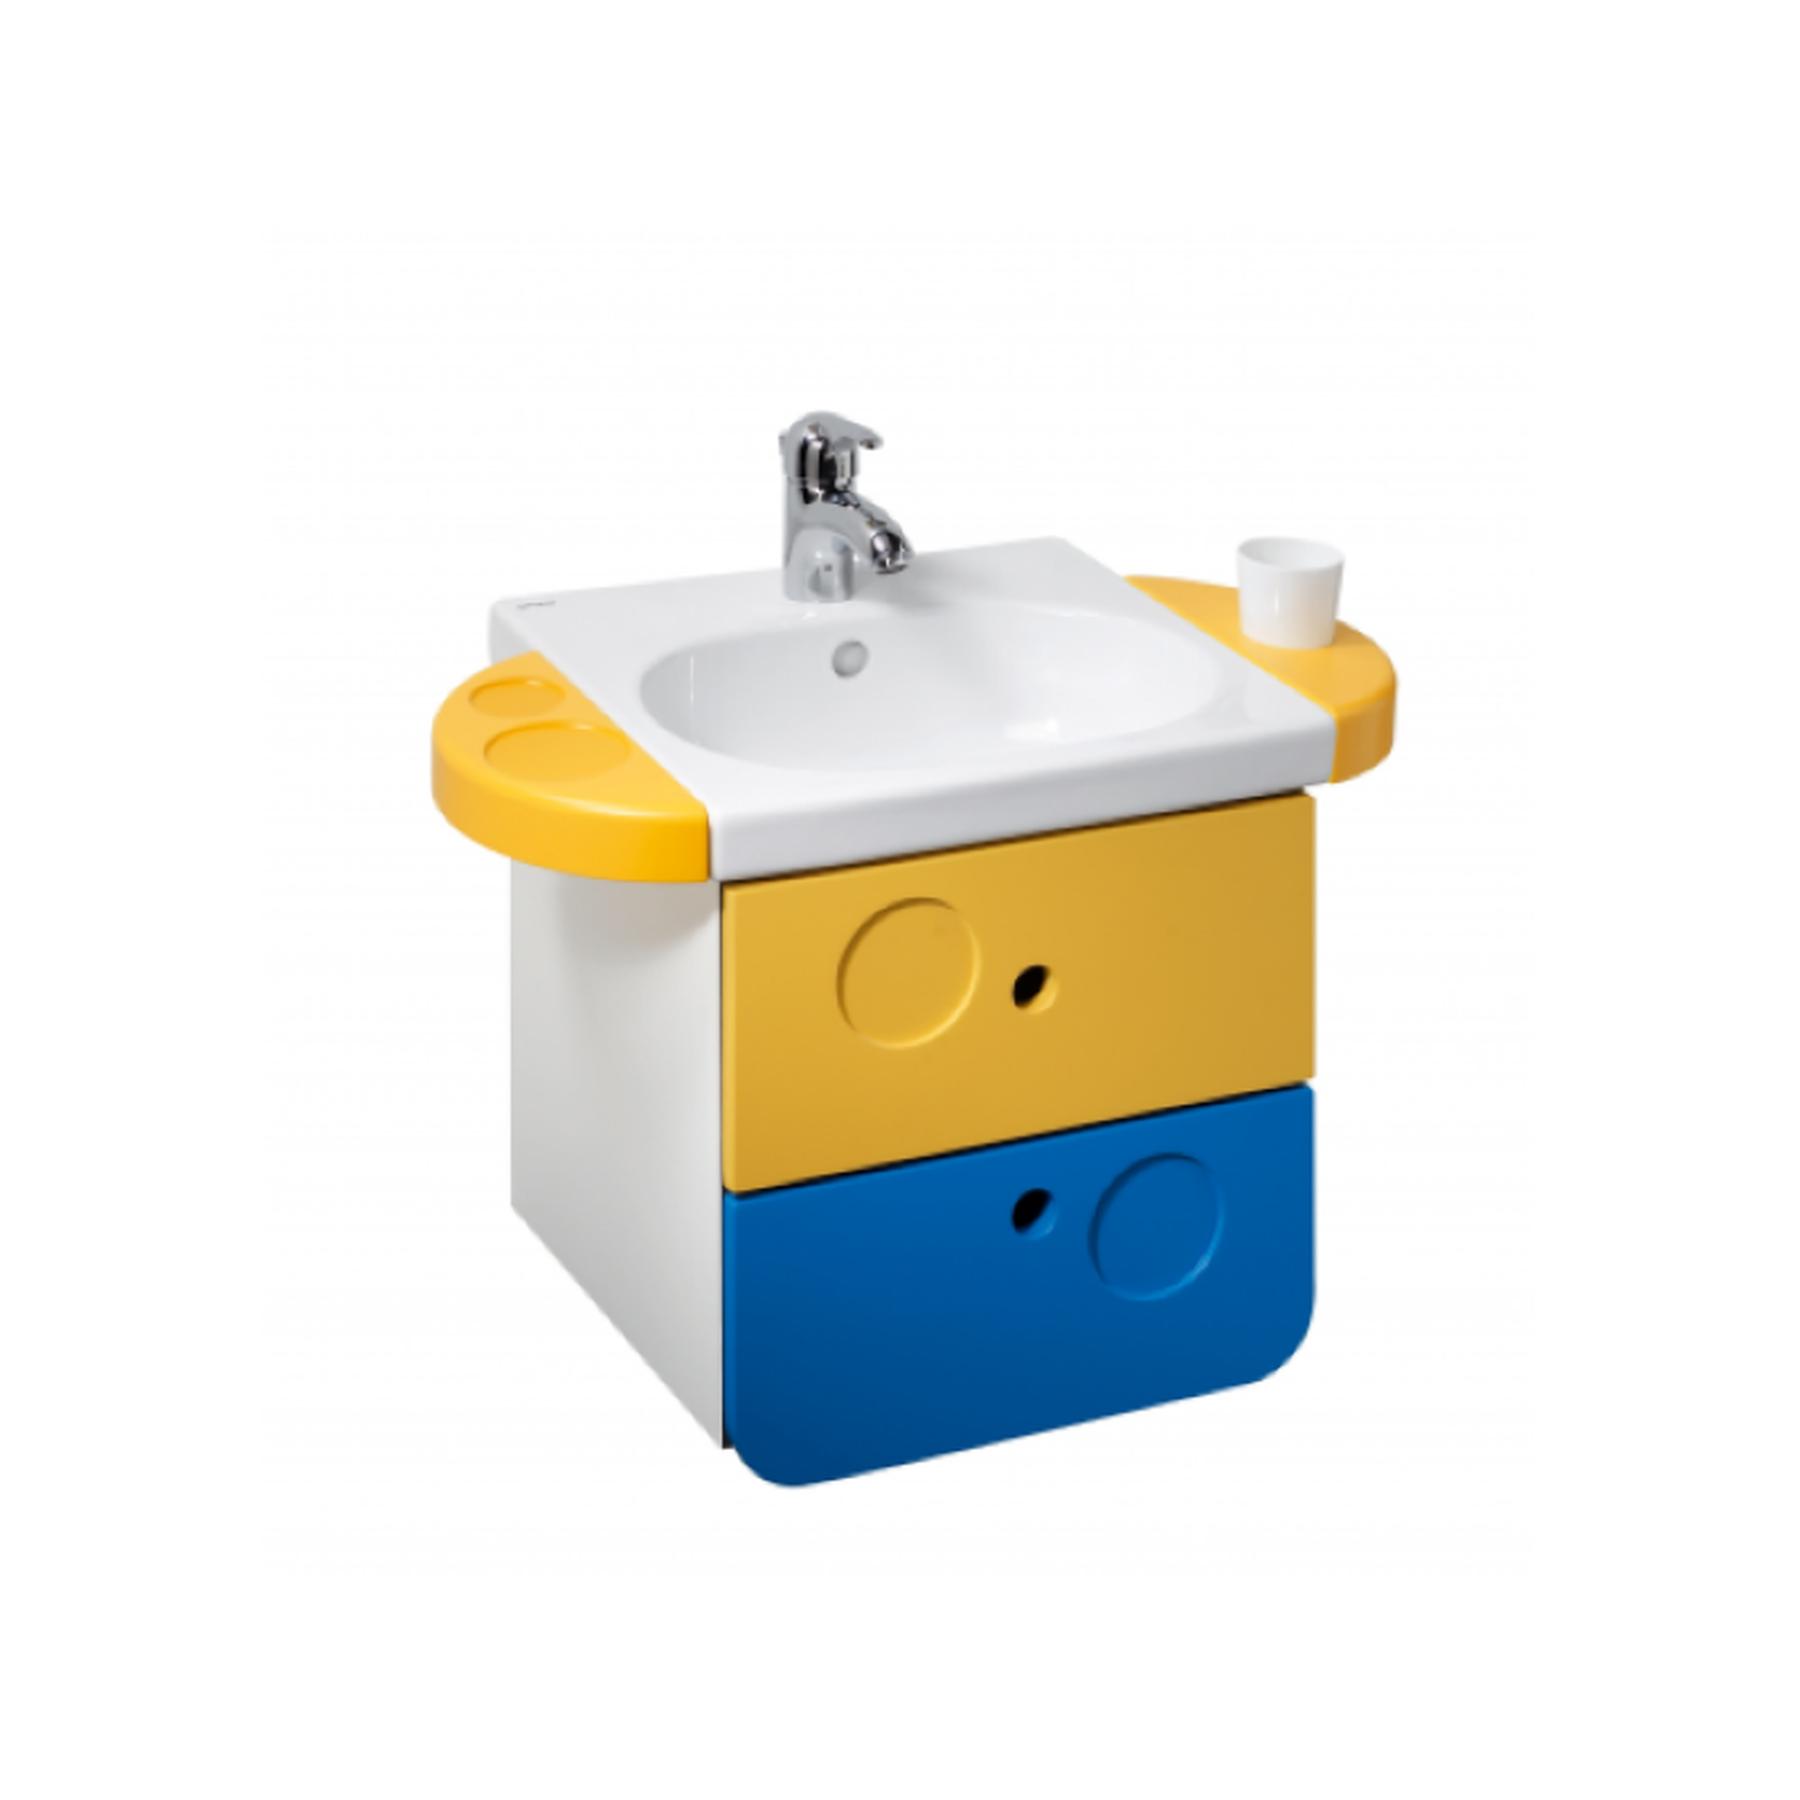 Meuble salle de bains suspendu avec tiroirs WC kids sanitaires pour enfant couleur bleu/jaune   